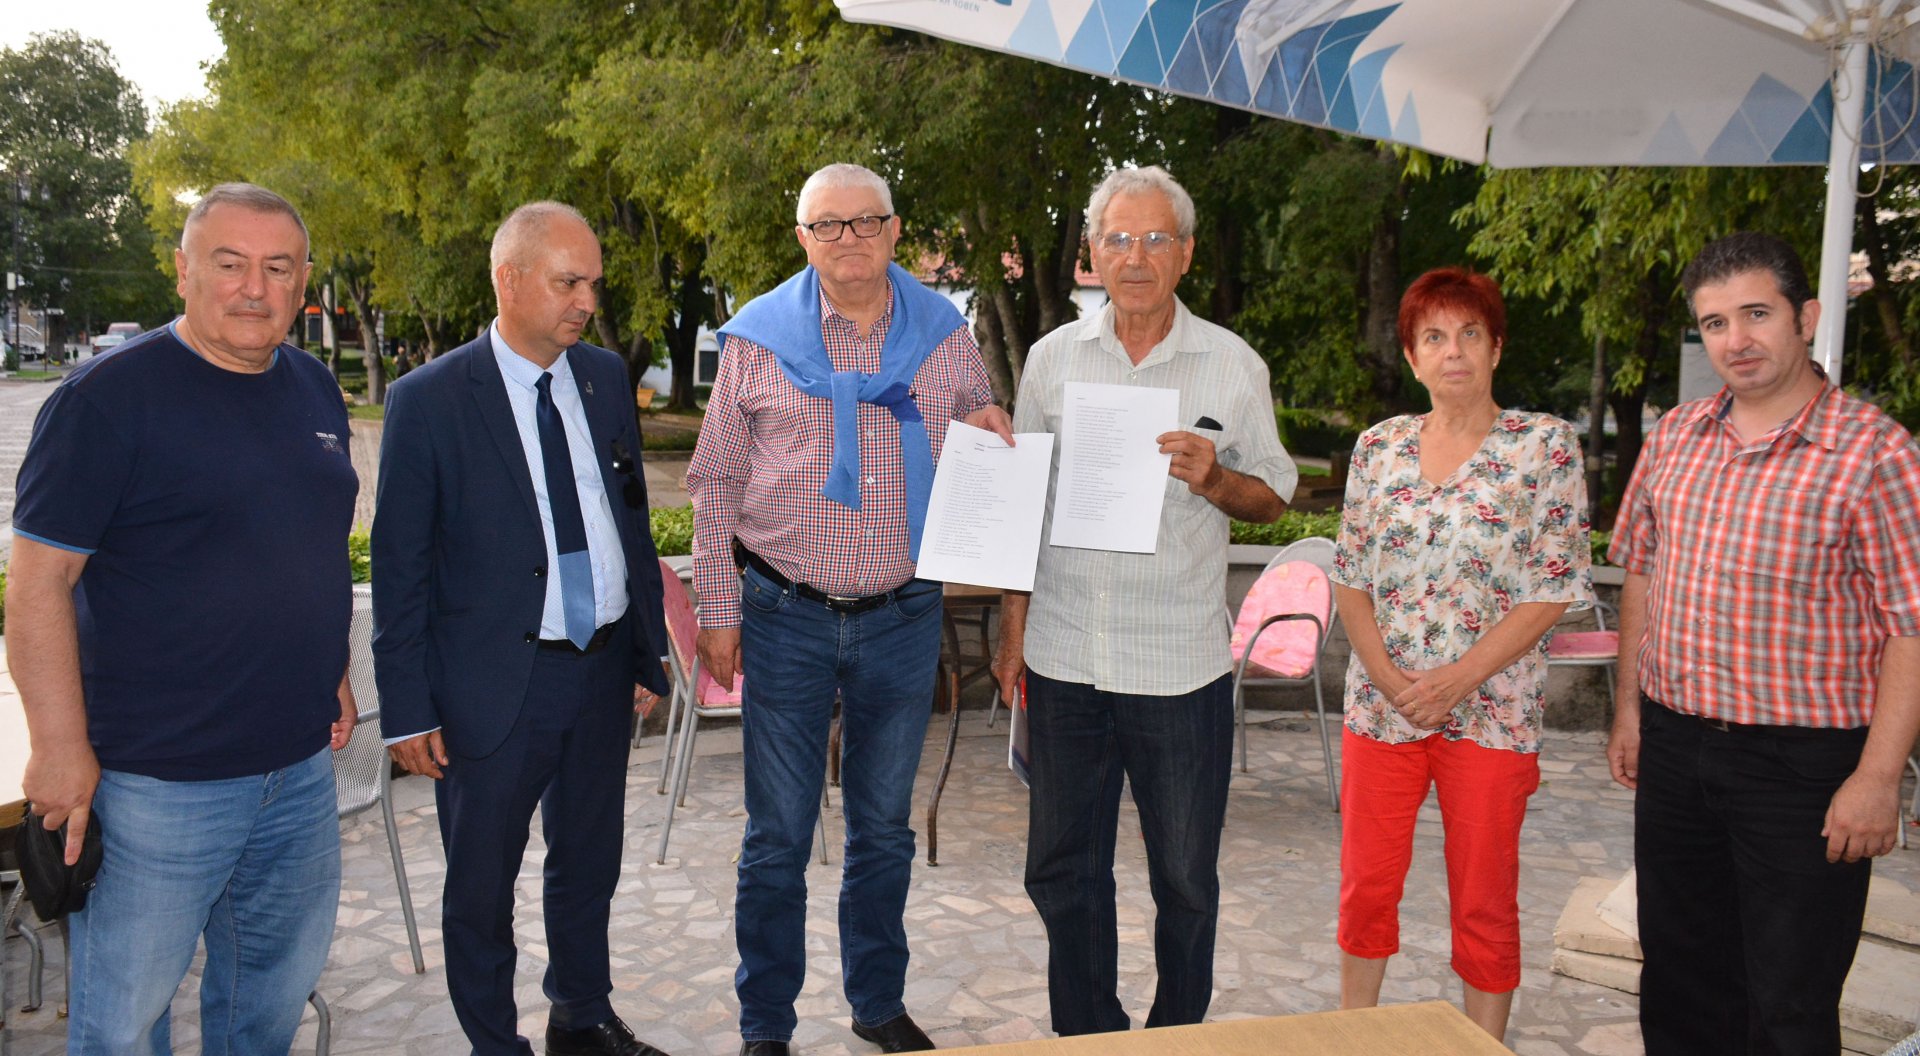 Петър Кънев (третият отляво надясно) посети читалището заедно с кандидати за народни представители от листата на коалицията. Снимки БСП